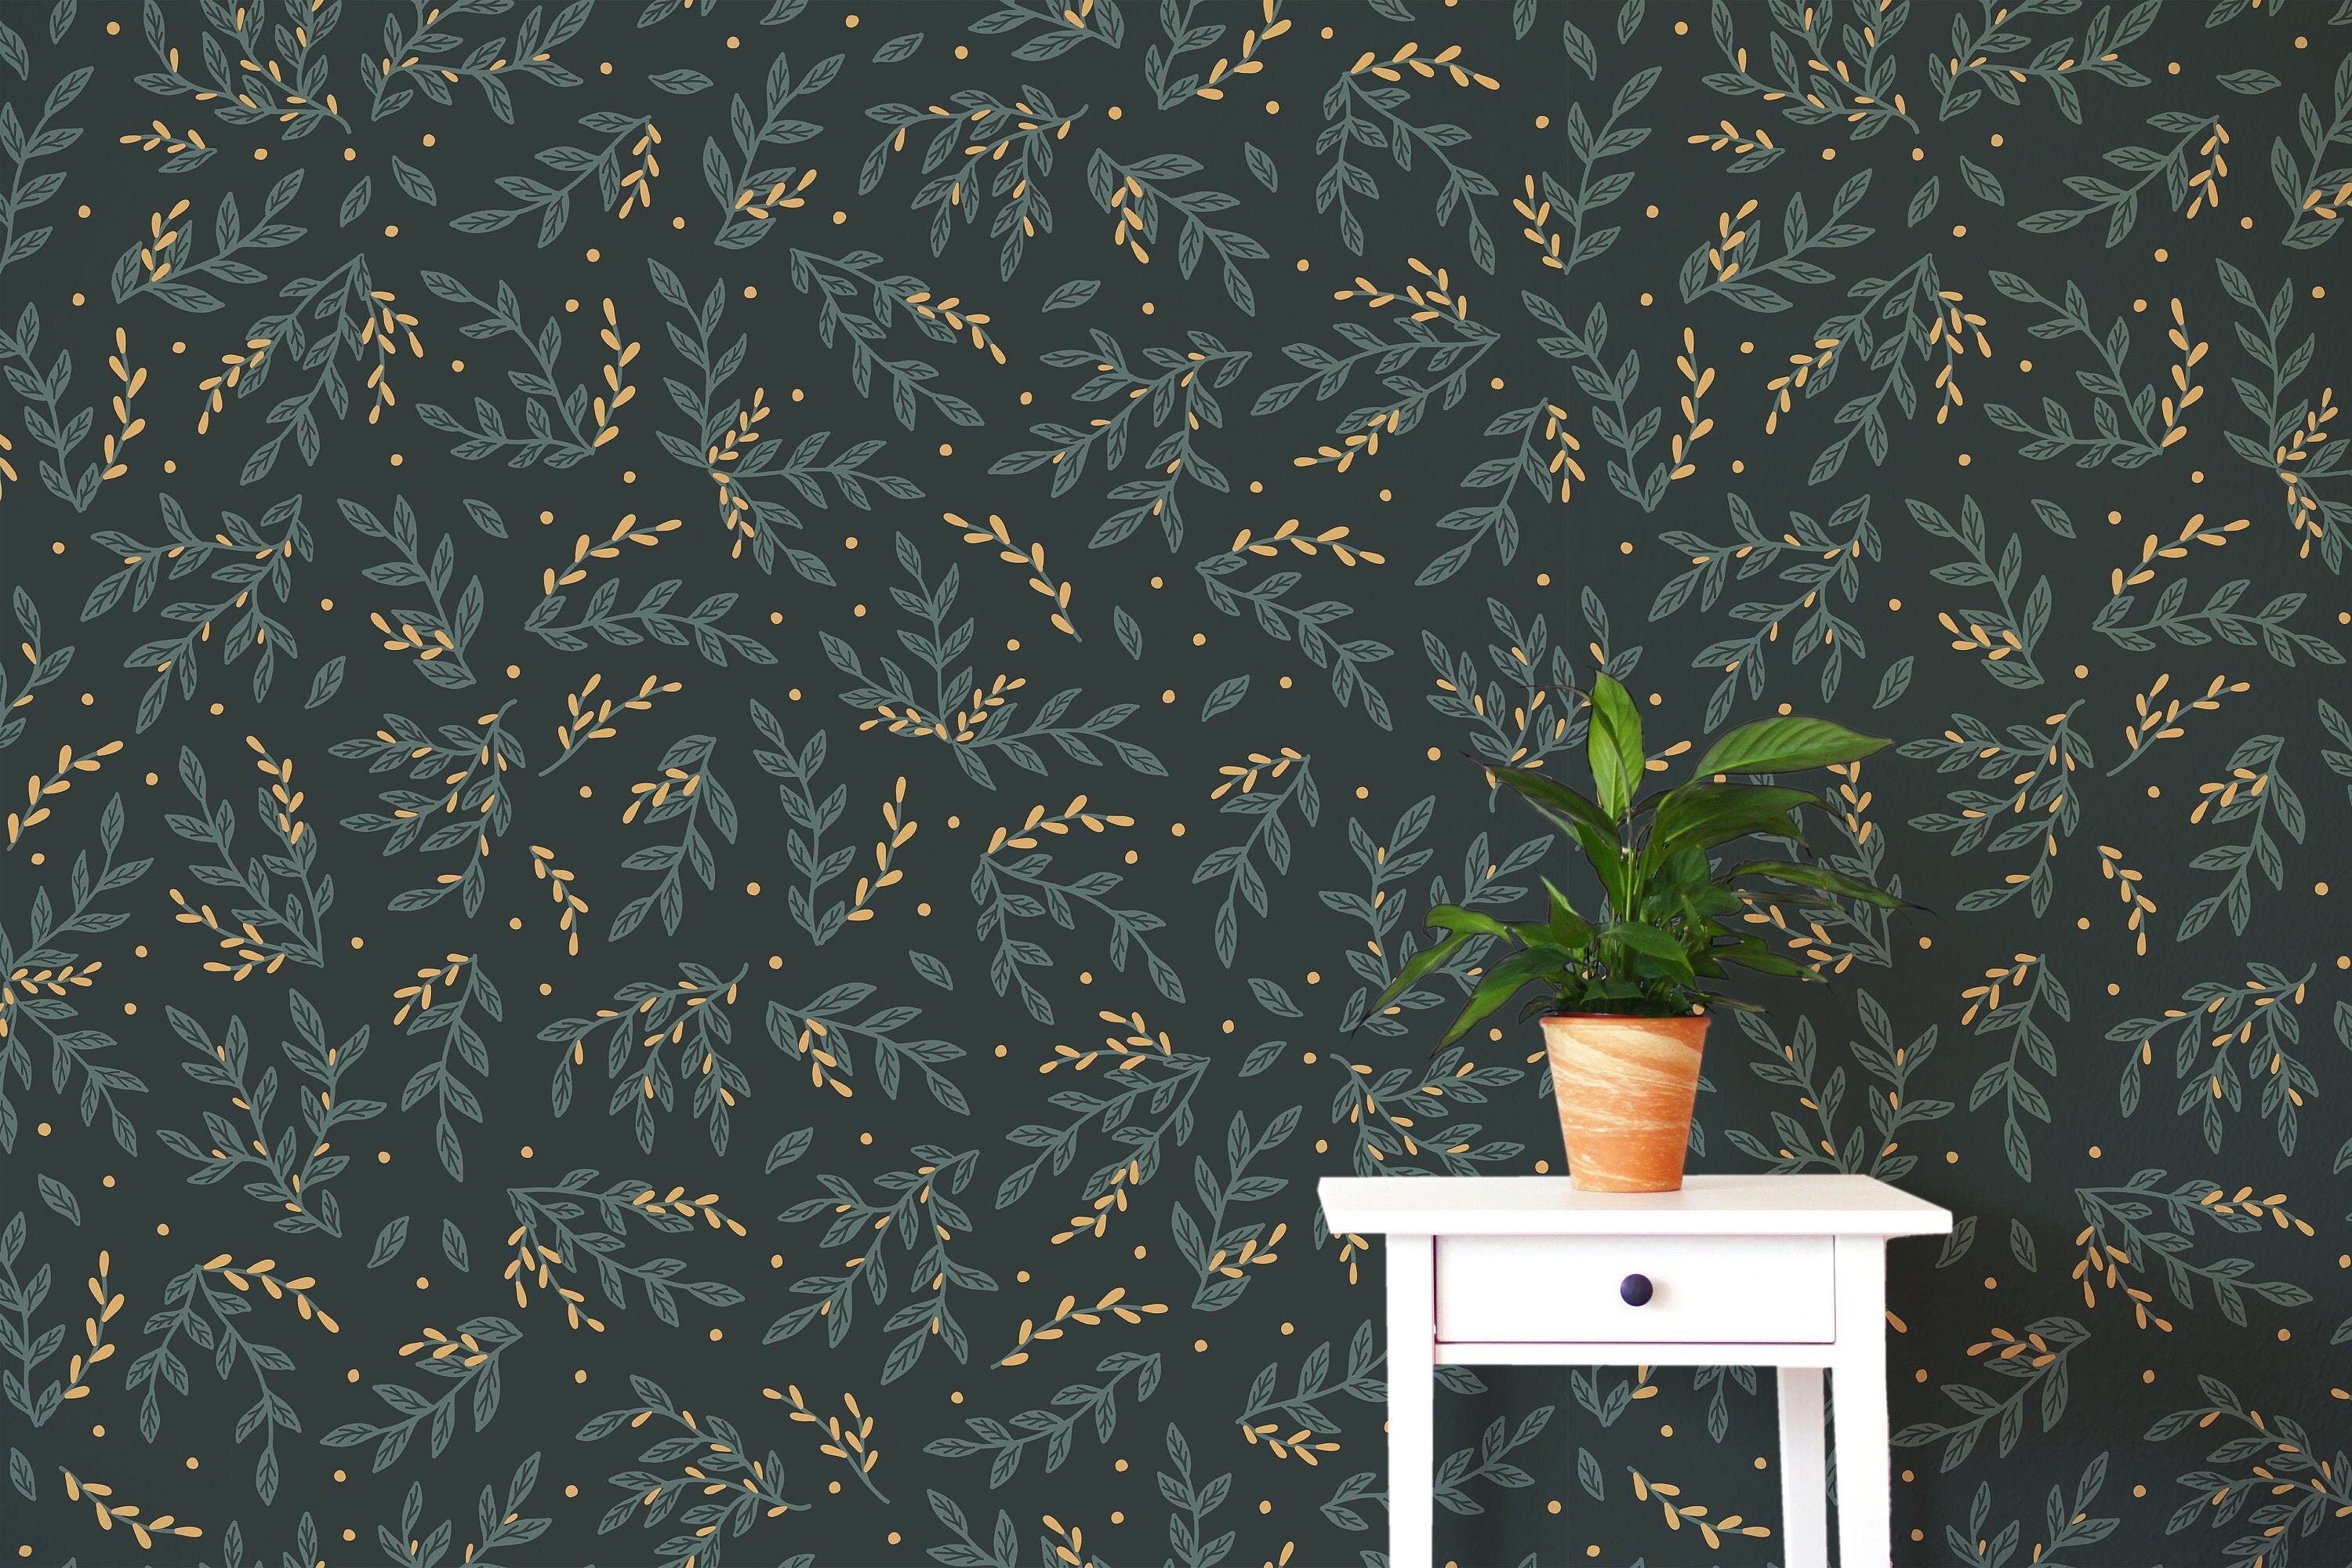 Dark Floral Boho Wallpaper | Wallpaper Peel and Stick | Removable Wallpaper | Peel and Stick Wallpaper | Wall Paper Peel And Stick  2376 - JamesAndColors